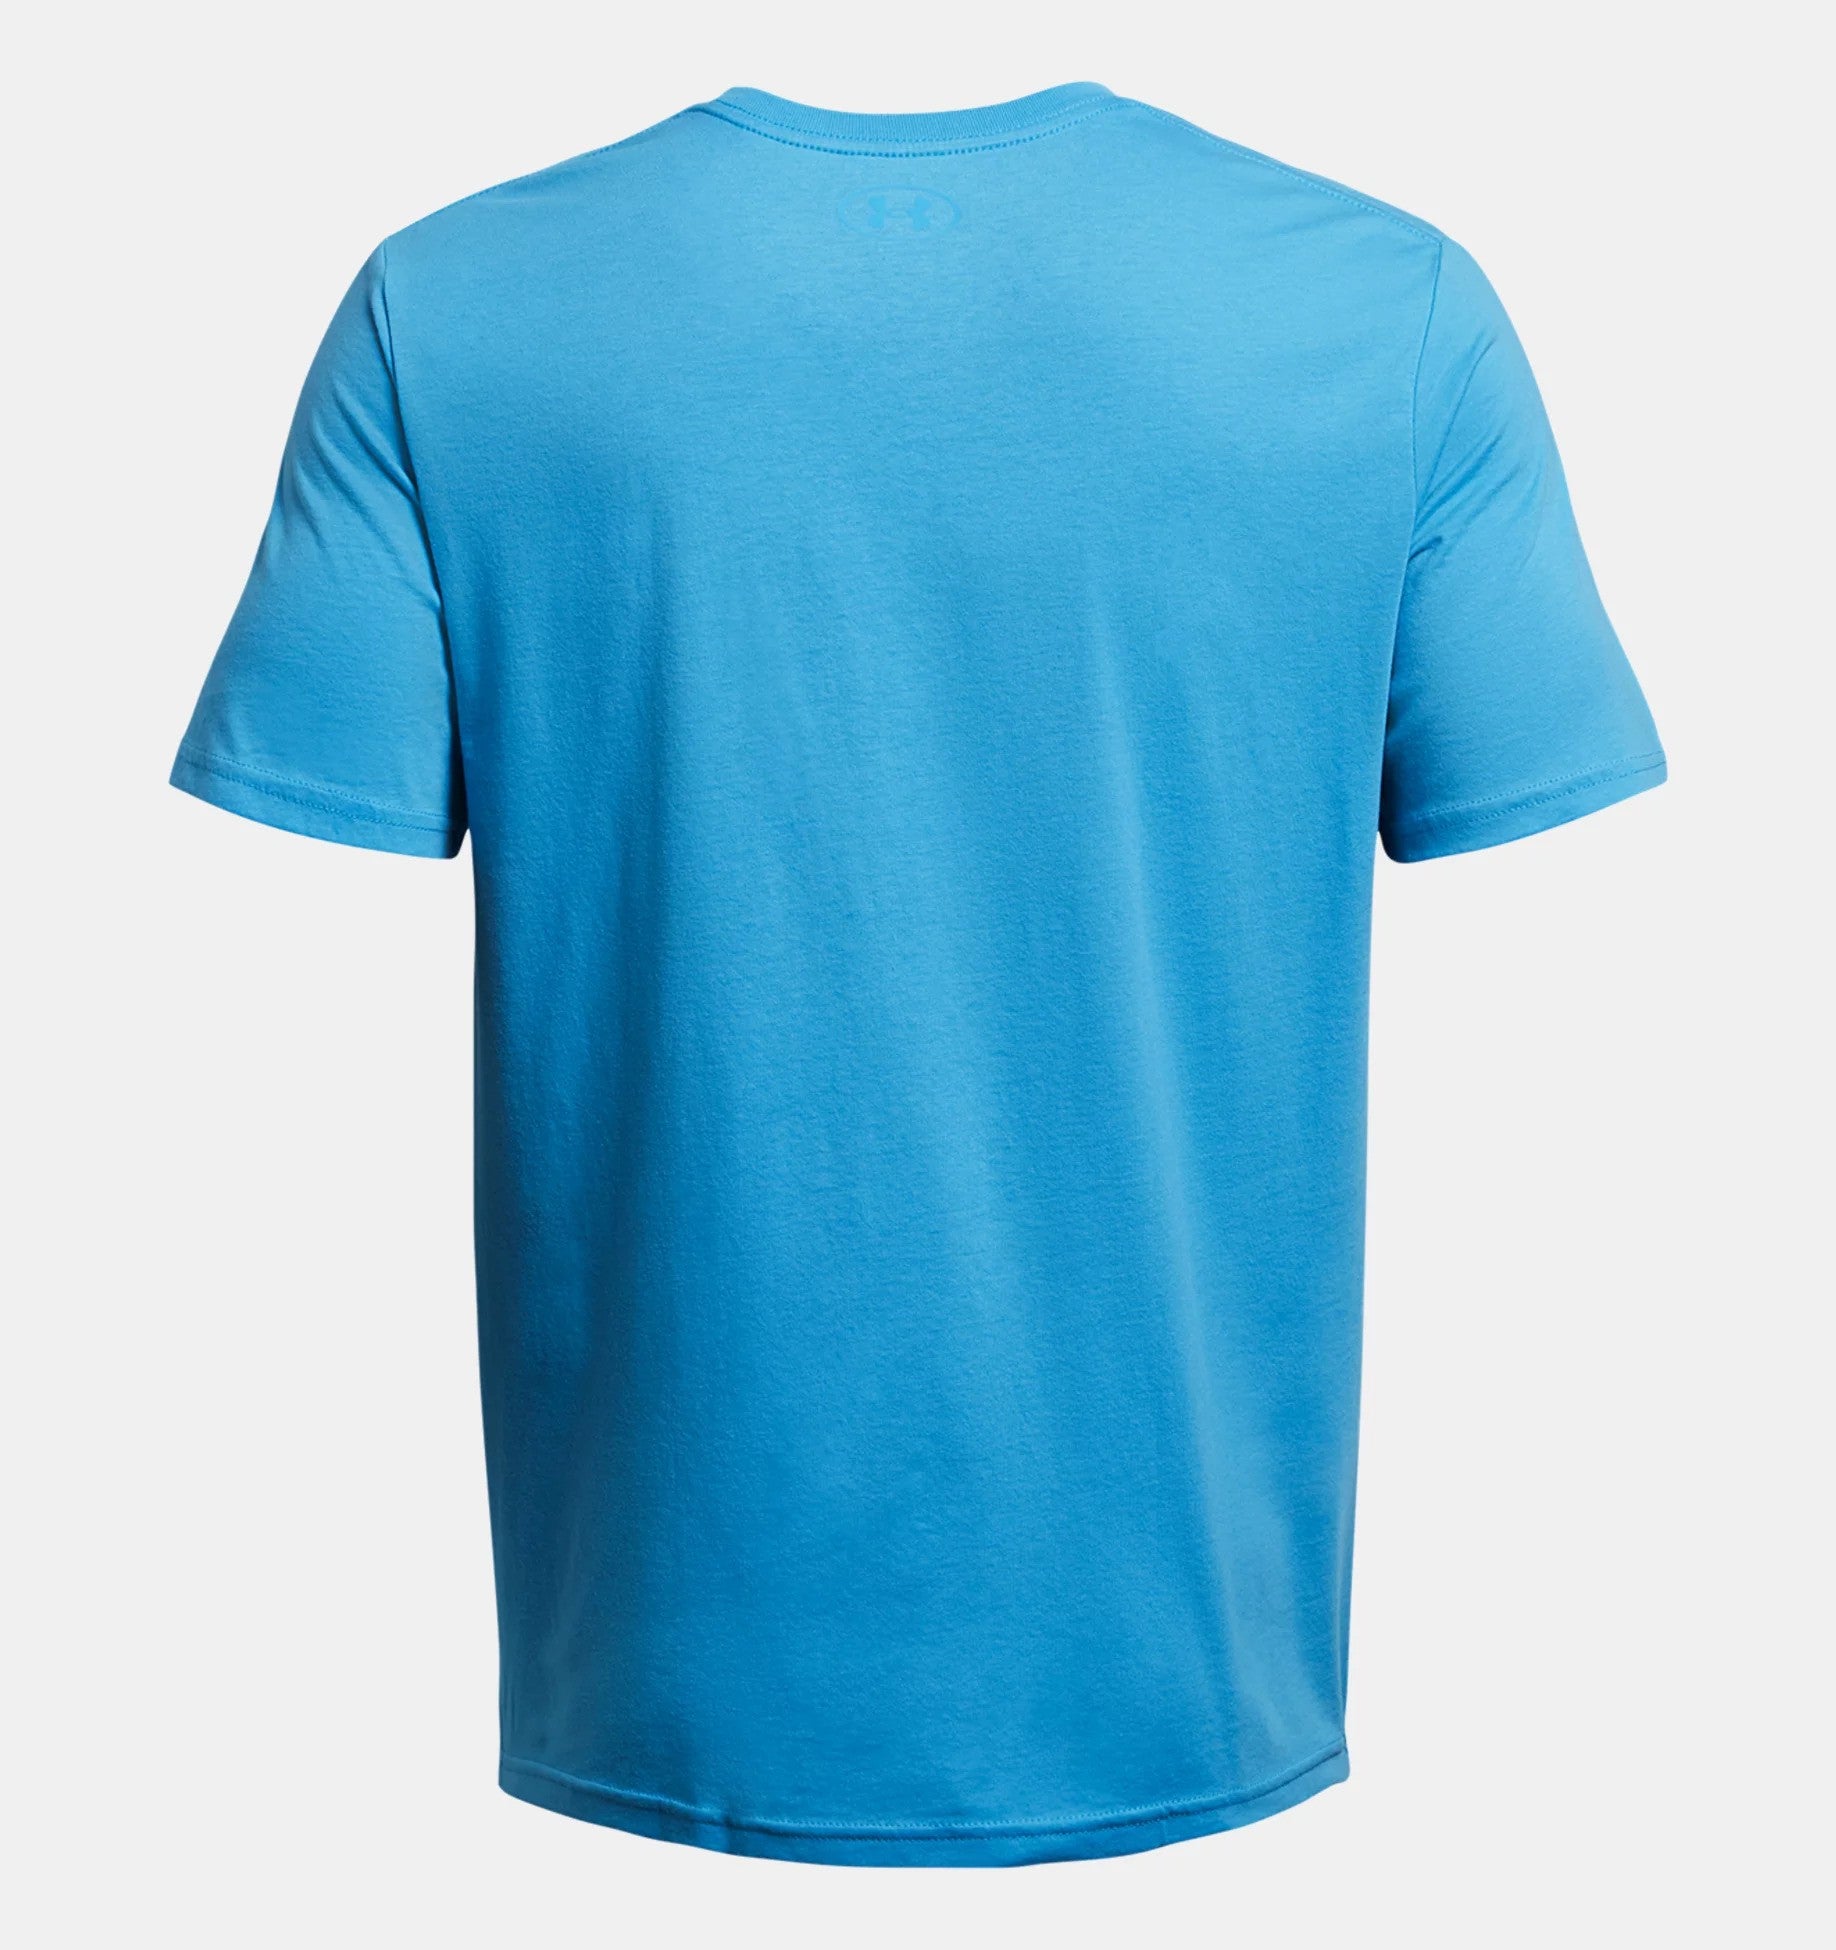 Under Armour Live Men's T-Shirt Blue Topaz